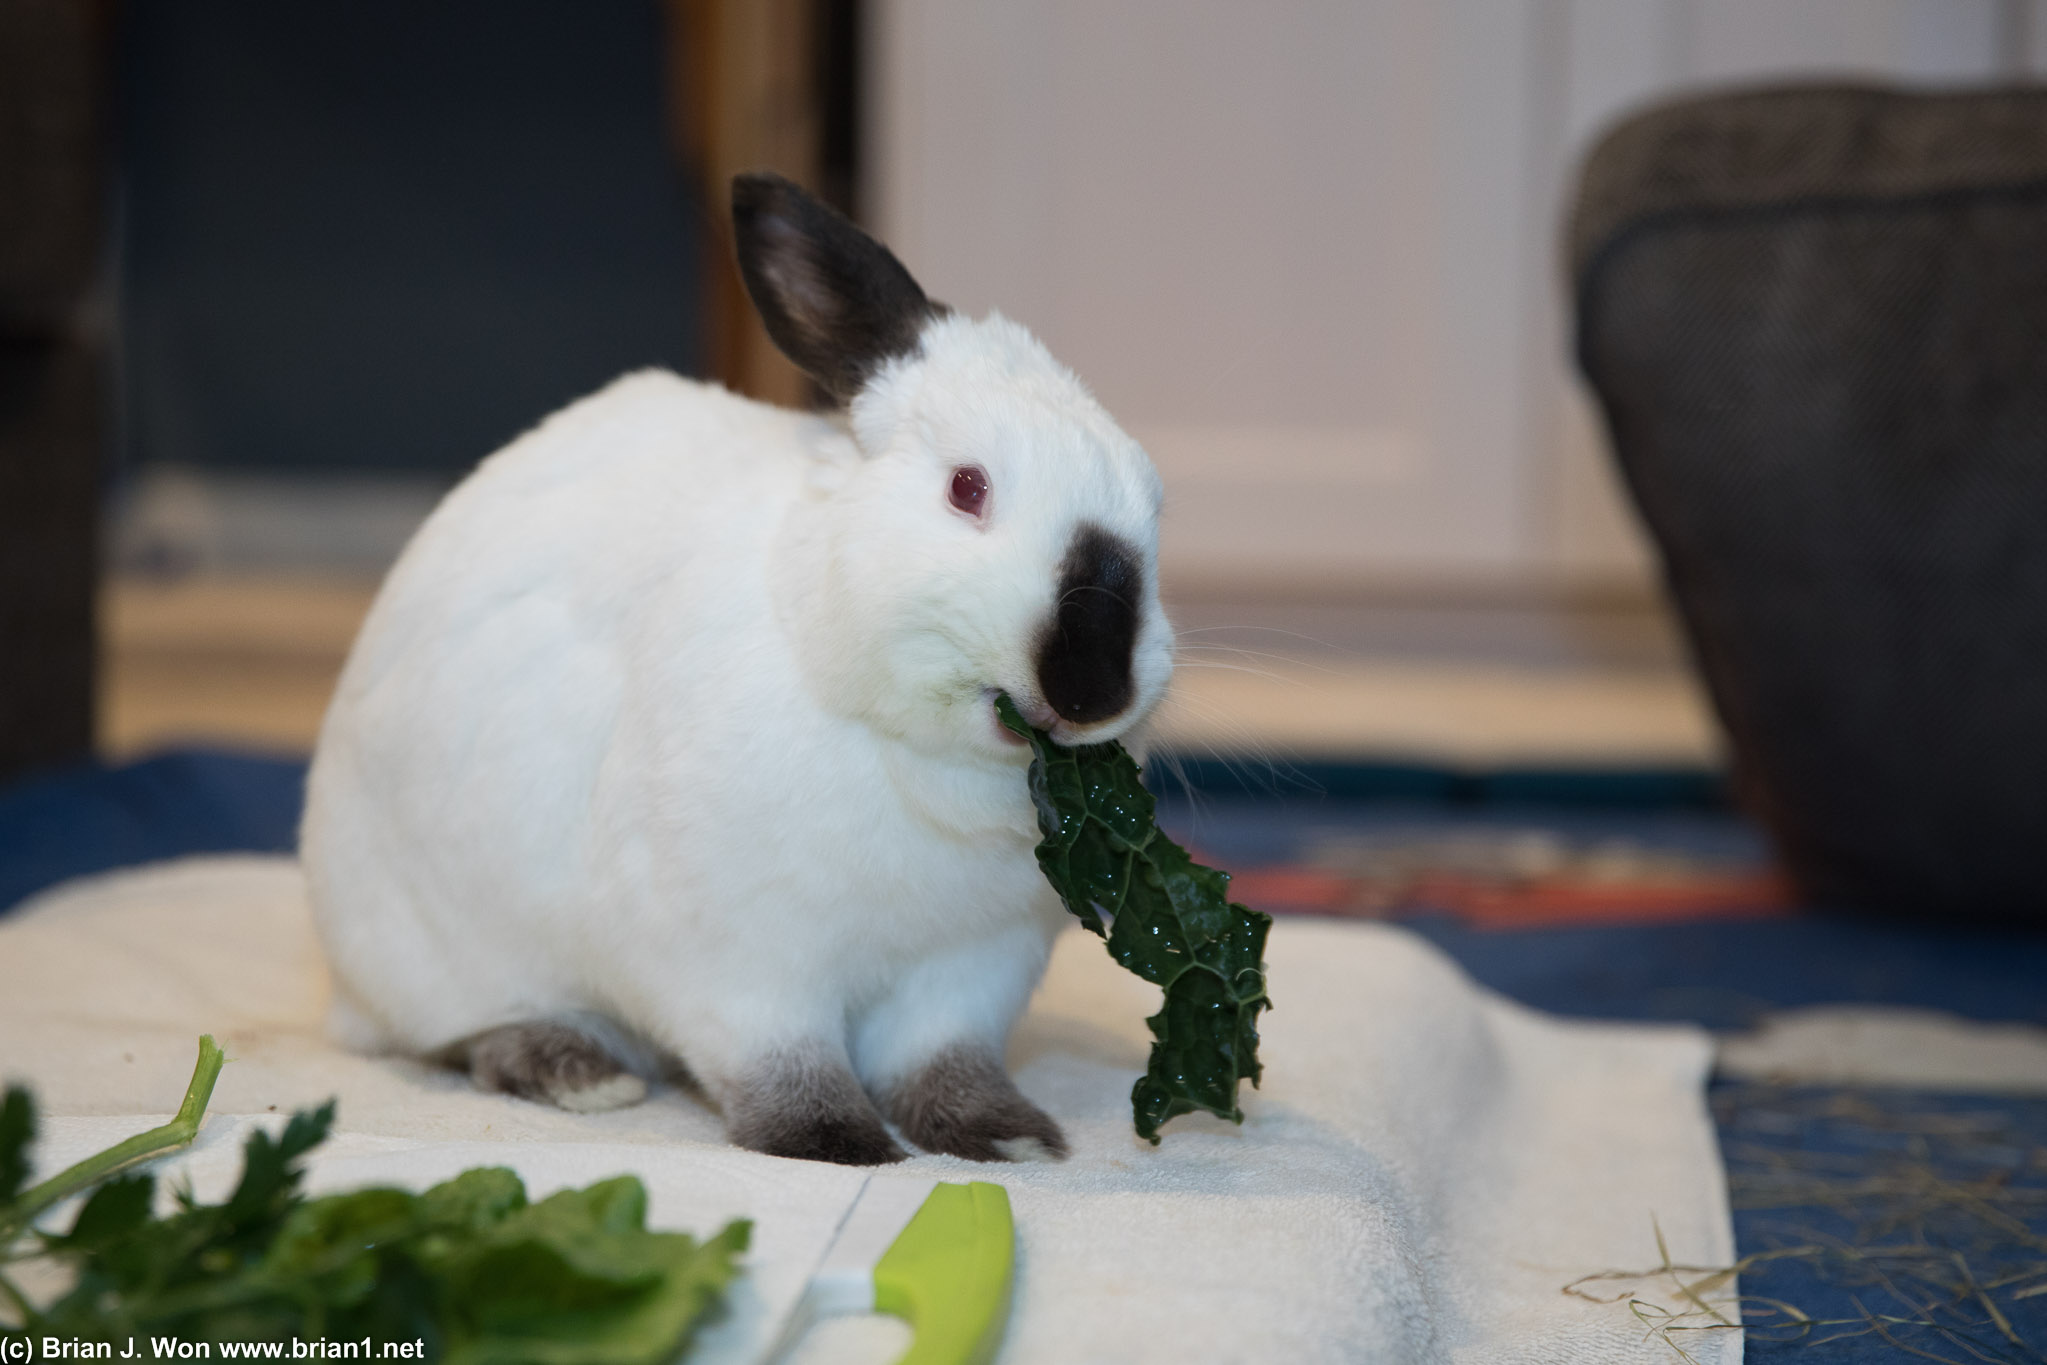 Kale for dinner.